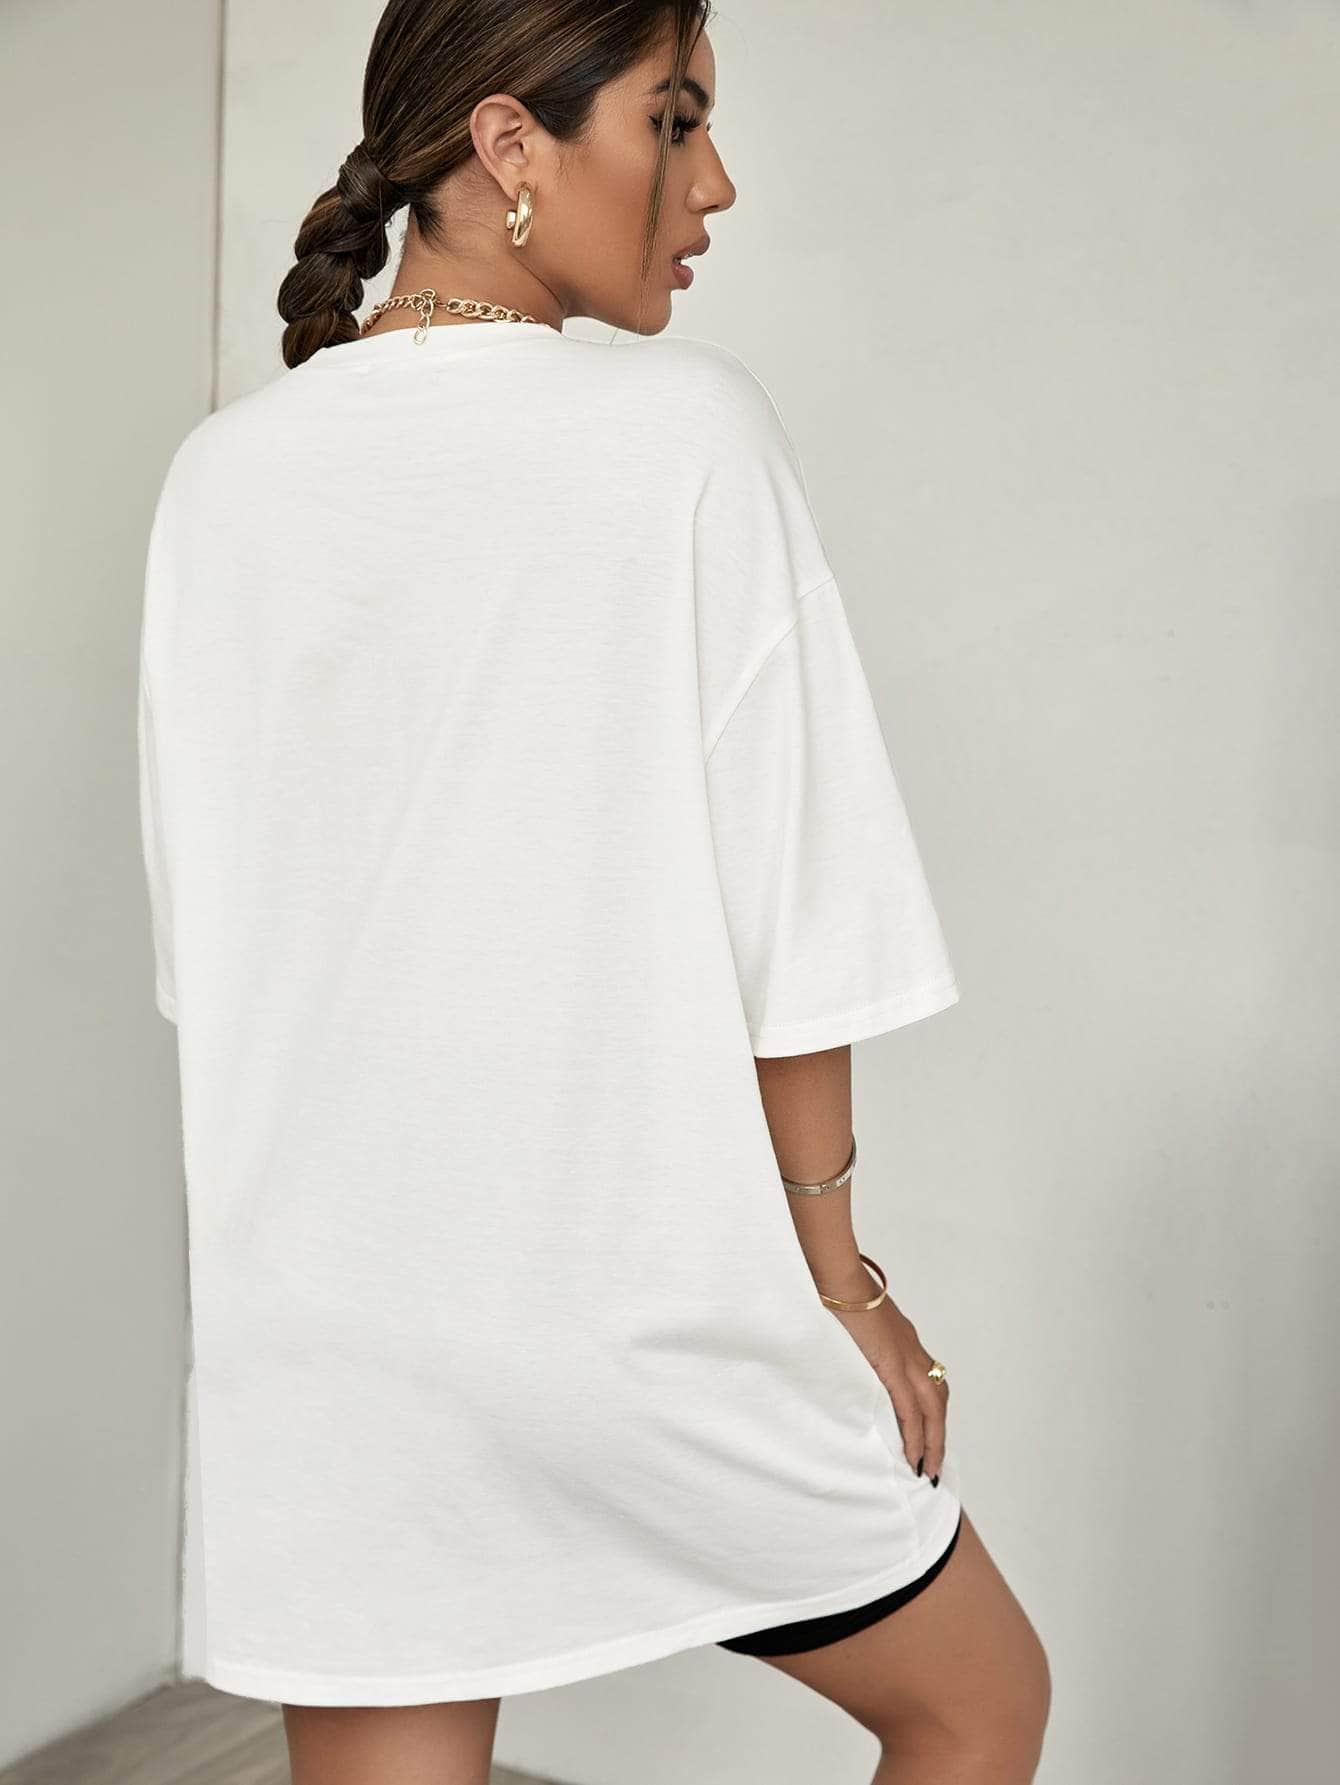 Blanco / M Camiseta de hombros caídos con estampado de letra